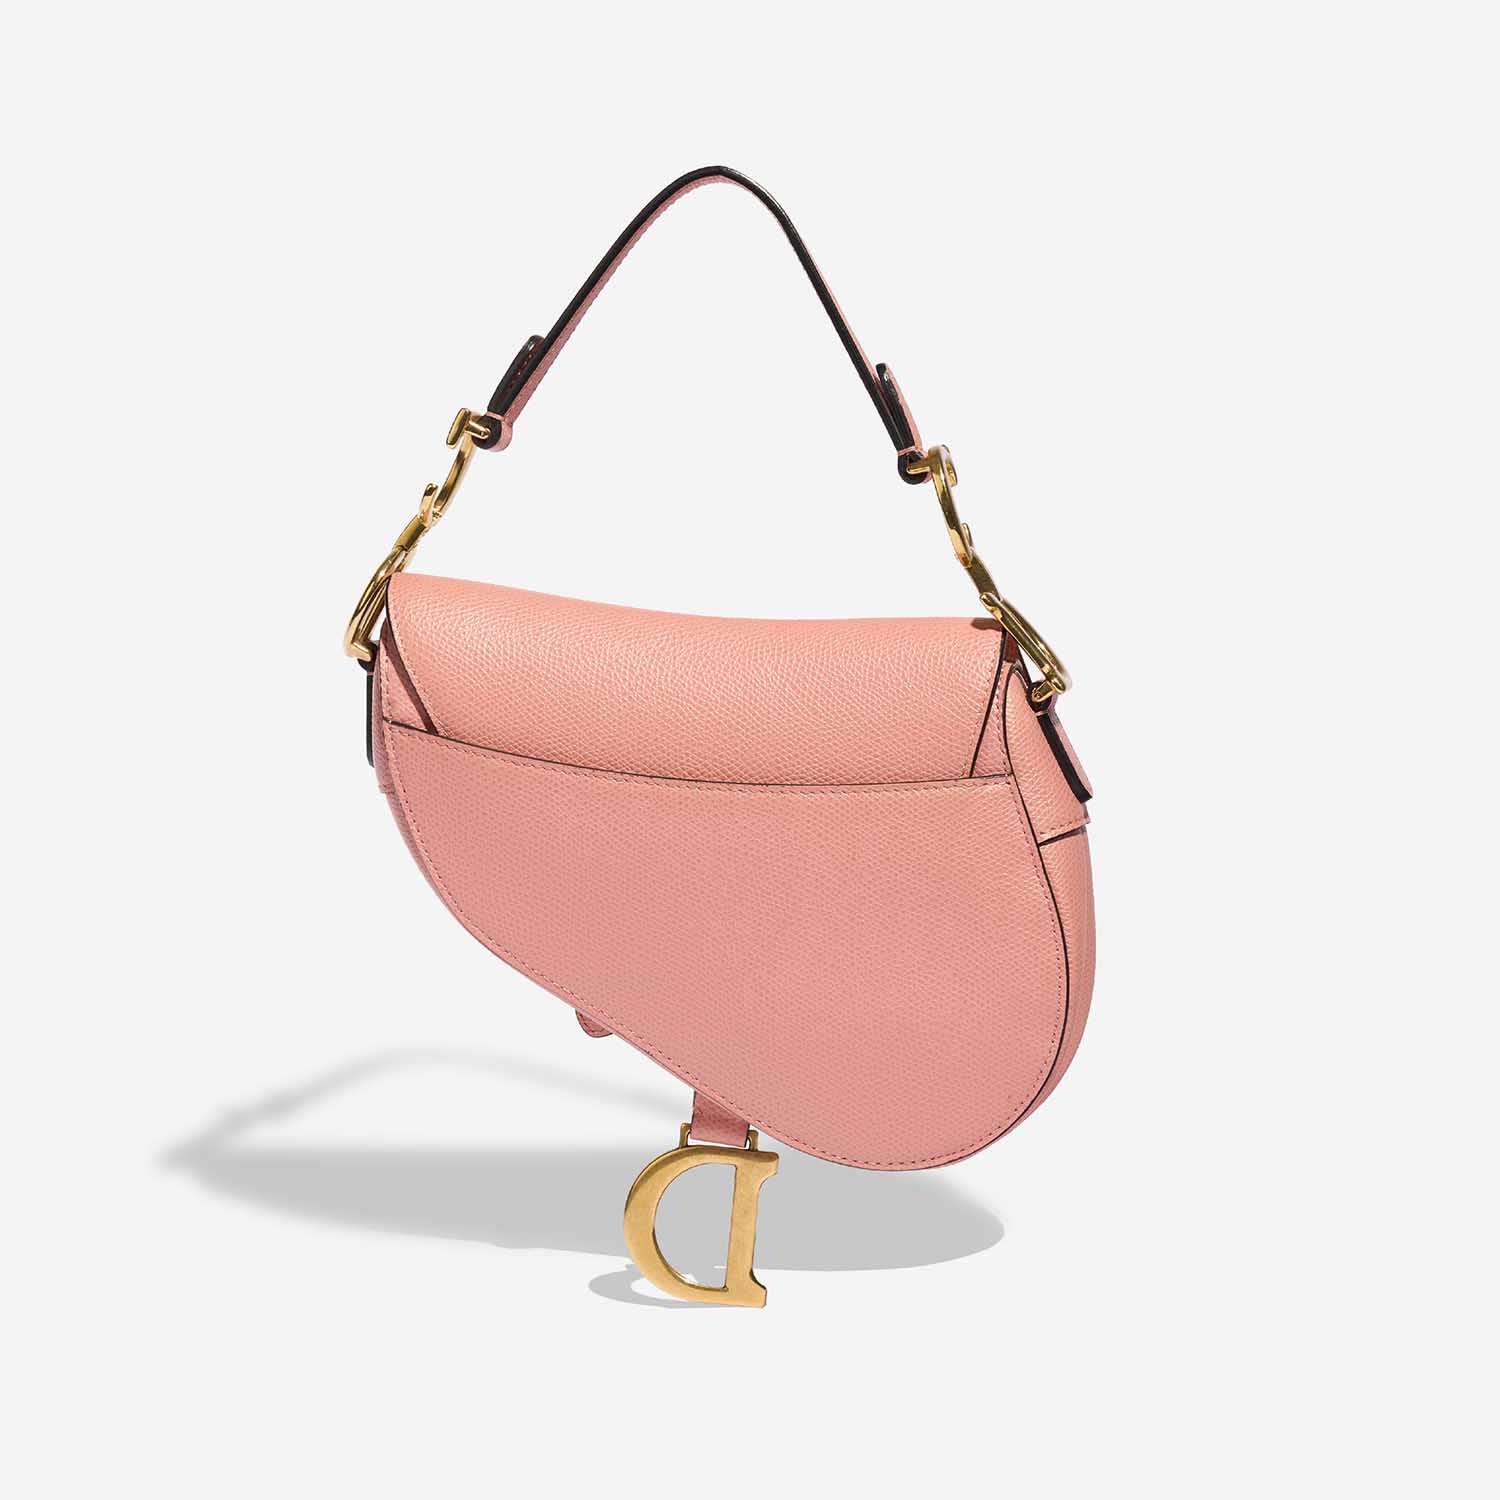 Dior Saddle Mini Pink Back | Verkaufen Sie Ihre Designertasche auf Saclab.com